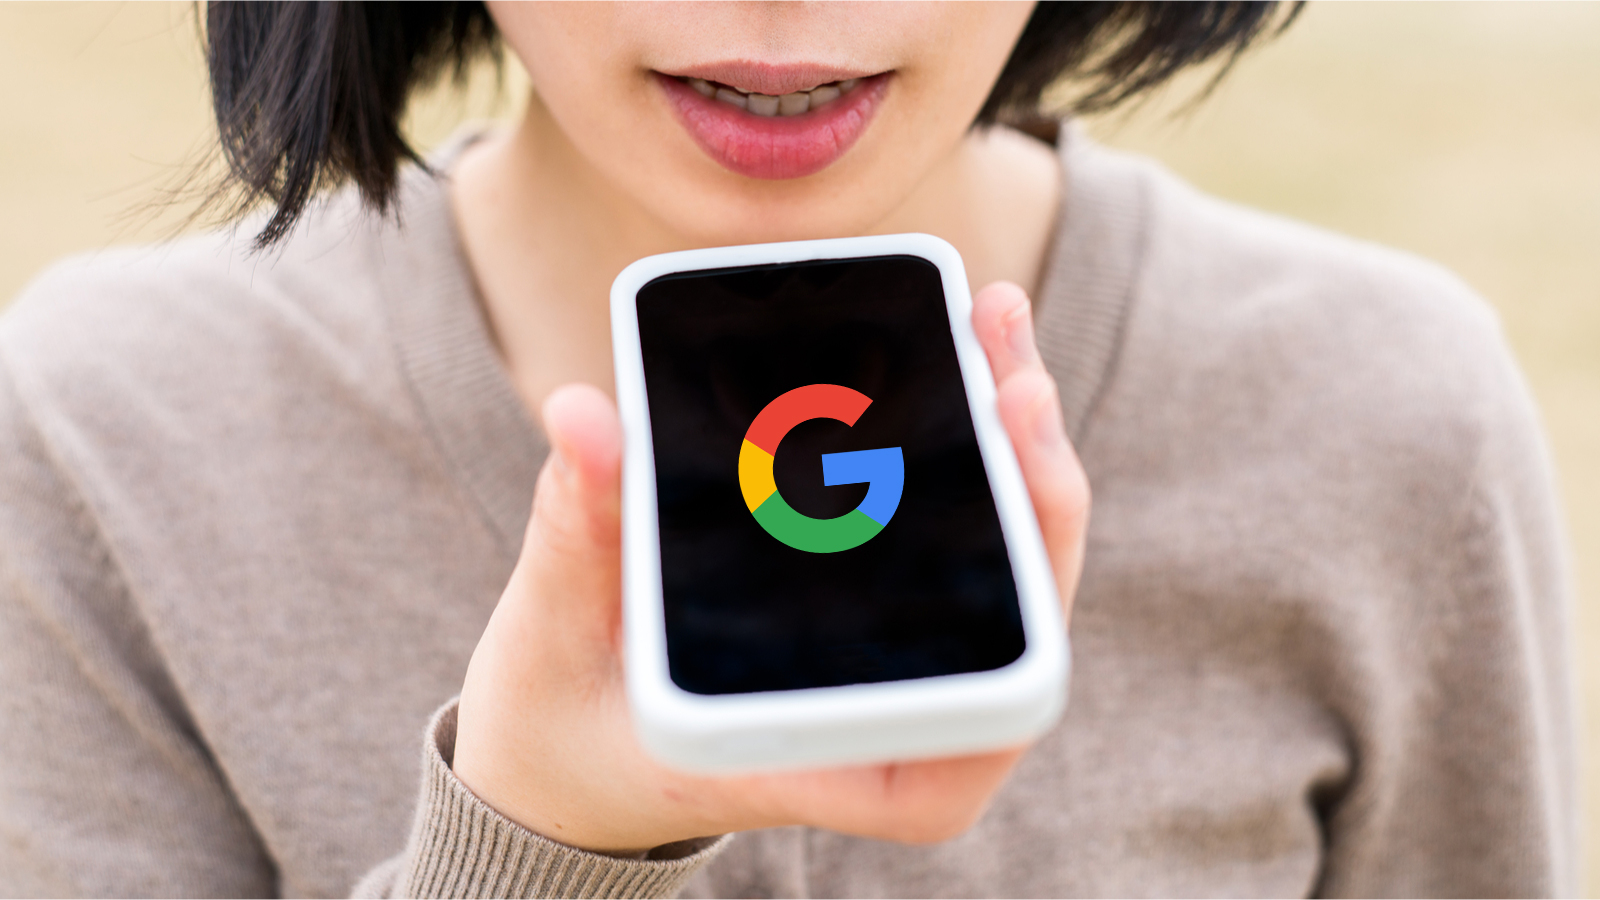 Découvrez comment Google Assistant a appris à prendre en compte le contexte de vos requêtes